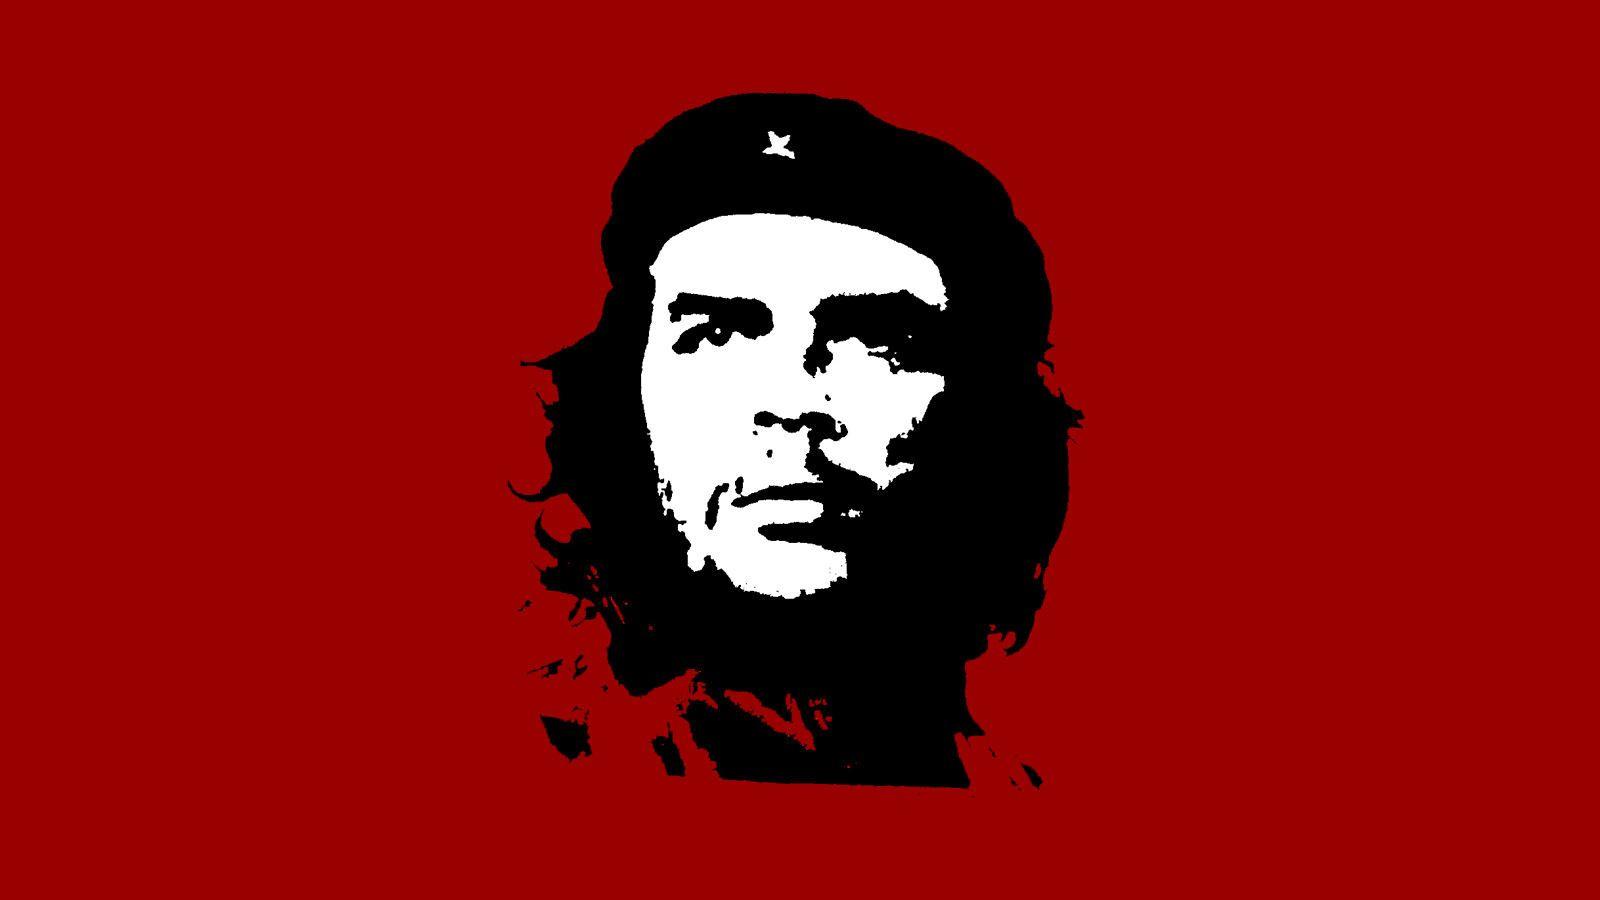 Quotes by Fidel Castro and Ernesto Che Guevara